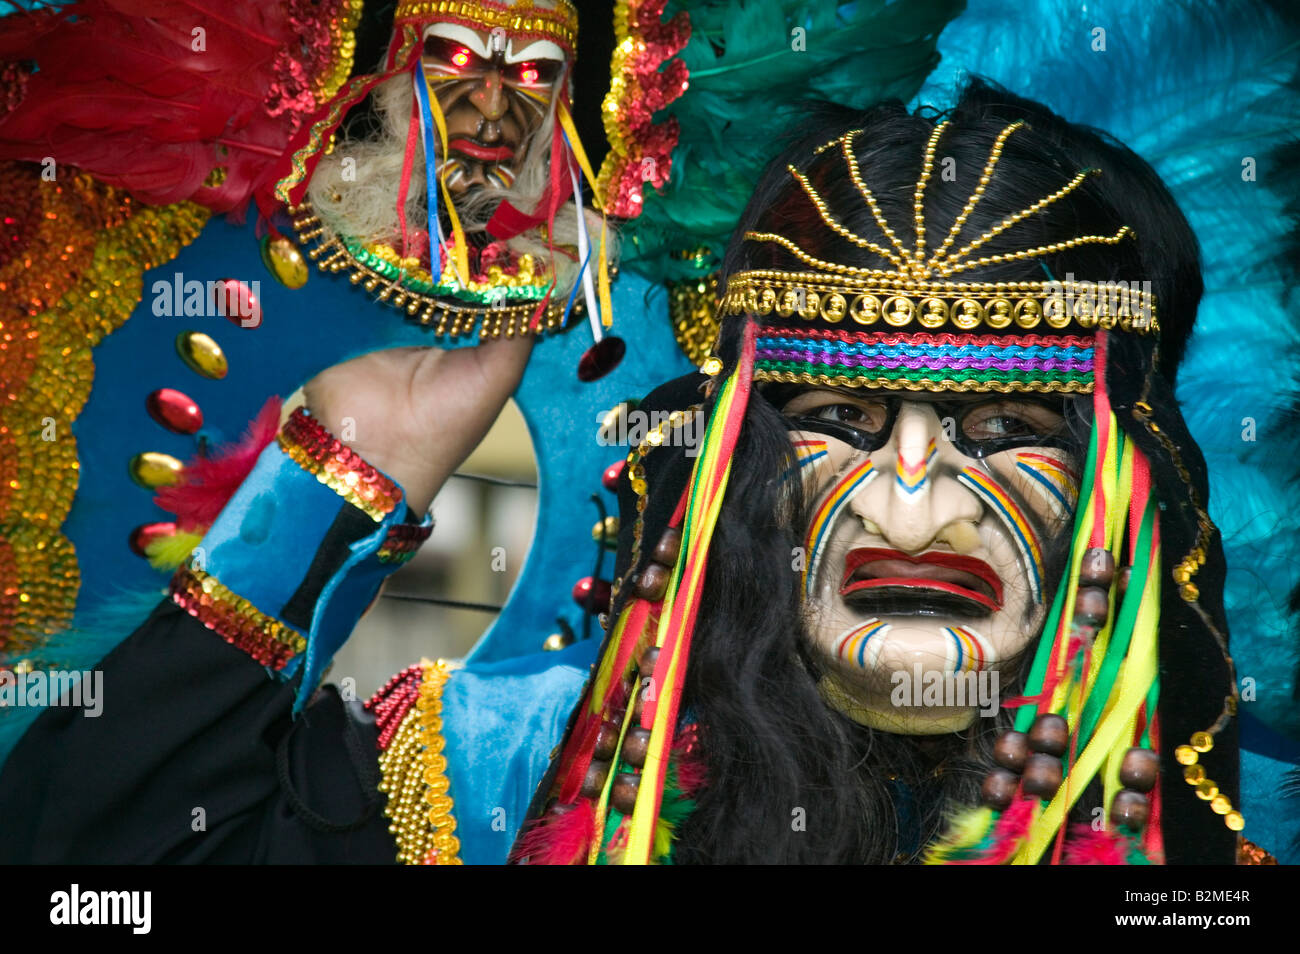 Carnaval del Pueblo, Latin American Festeggiamenti carnevaleschi in London - Costume boliviano Foto Stock